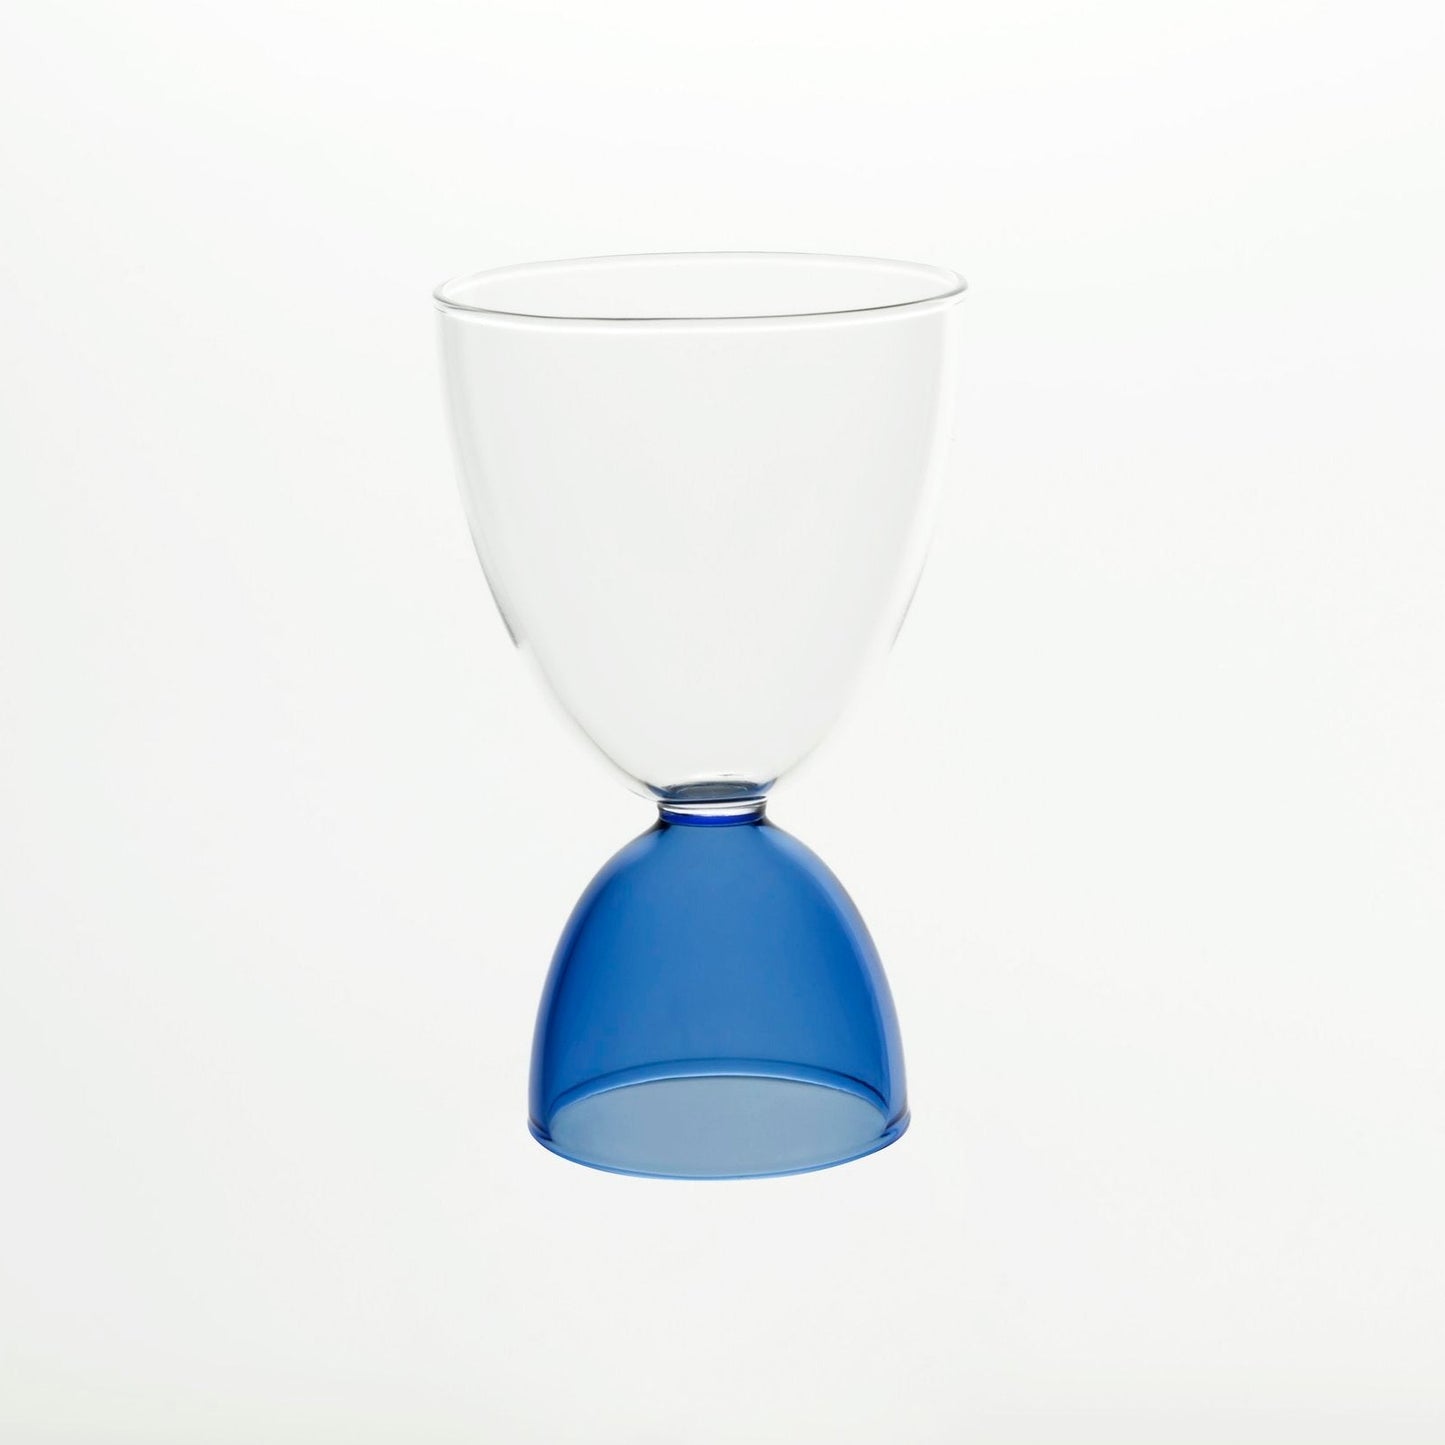 Halftone Mamo glass in blue 